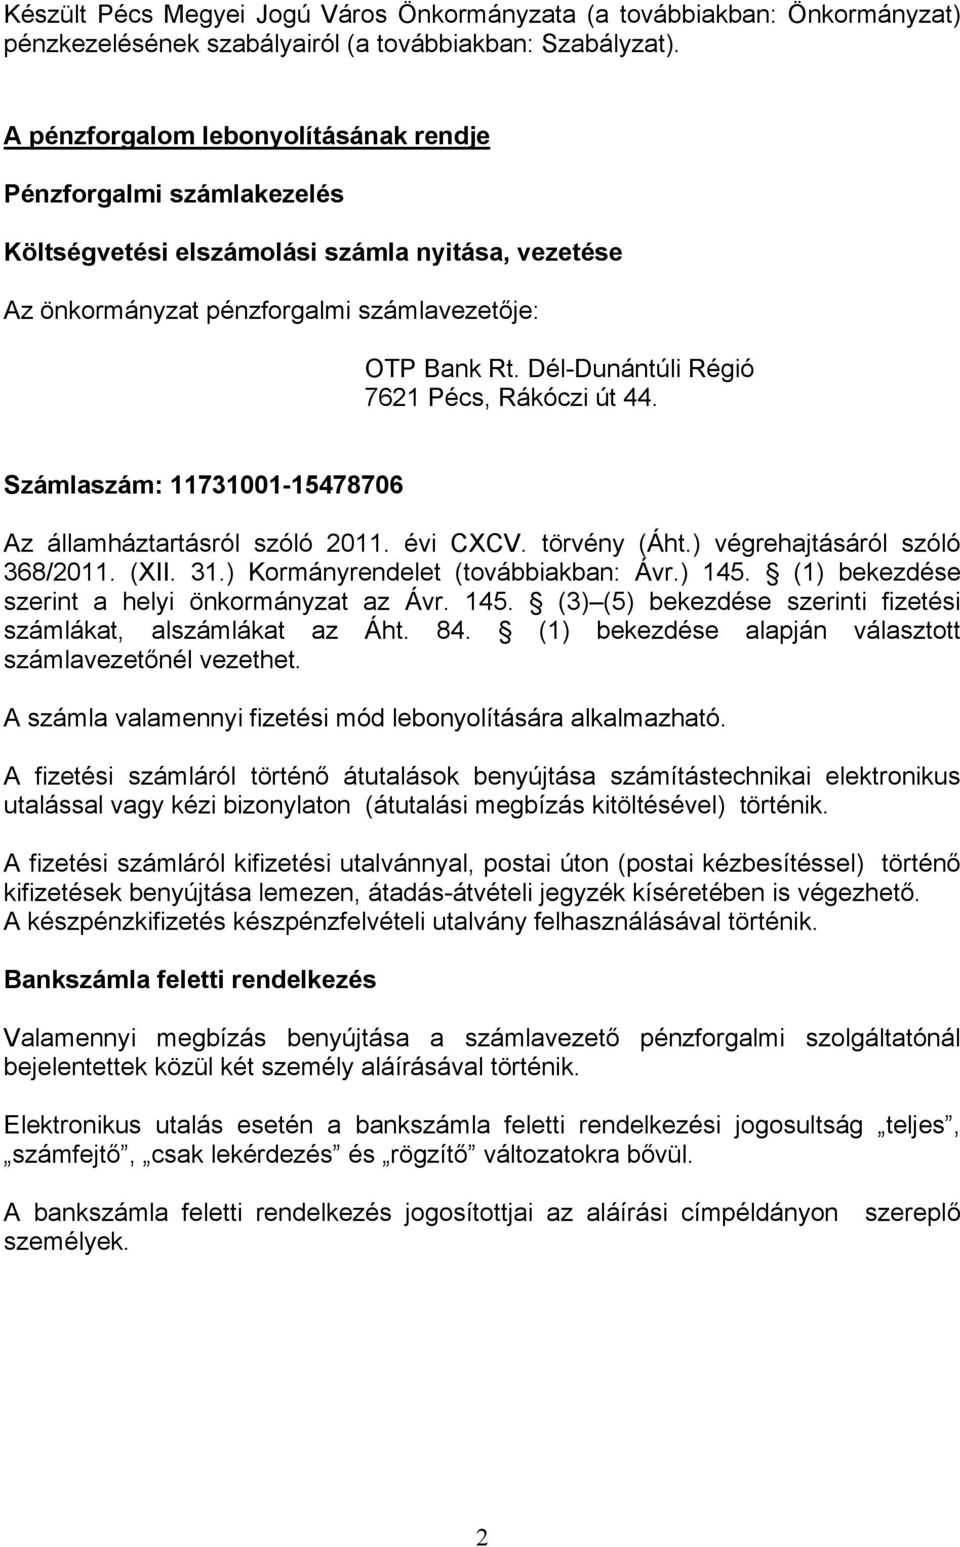 Dél-Dunántúli Régió 7621 Pécs, Rákóczi út 44. Számlaszám: 11731001-15478706 Az államháztartásról szóló 2011. évi CXCV. törvény (Áht.) végrehajtásáról szóló 368/2011. (XII. 31.